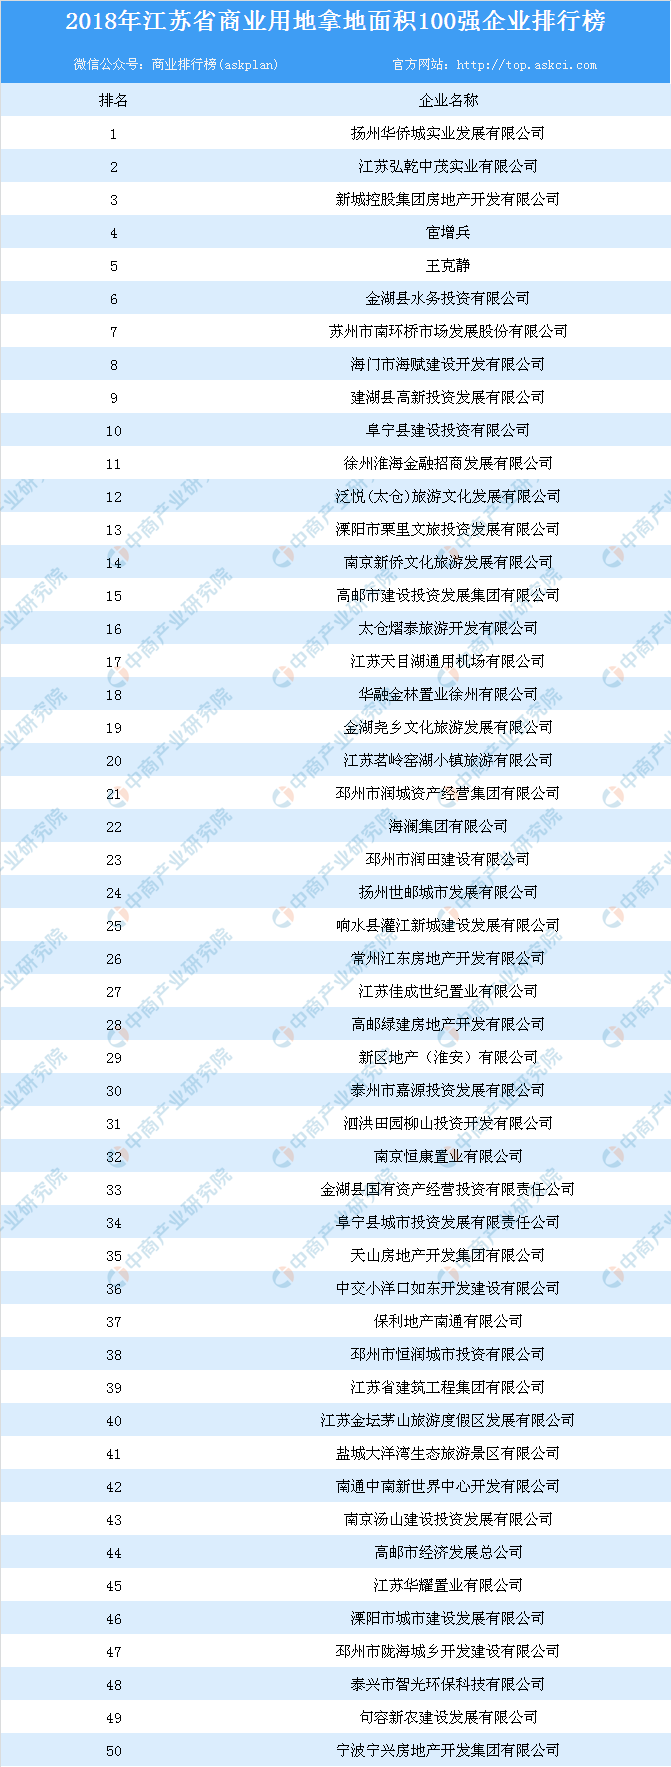 商业地产情报:2018年江苏省商业用地拿地面积